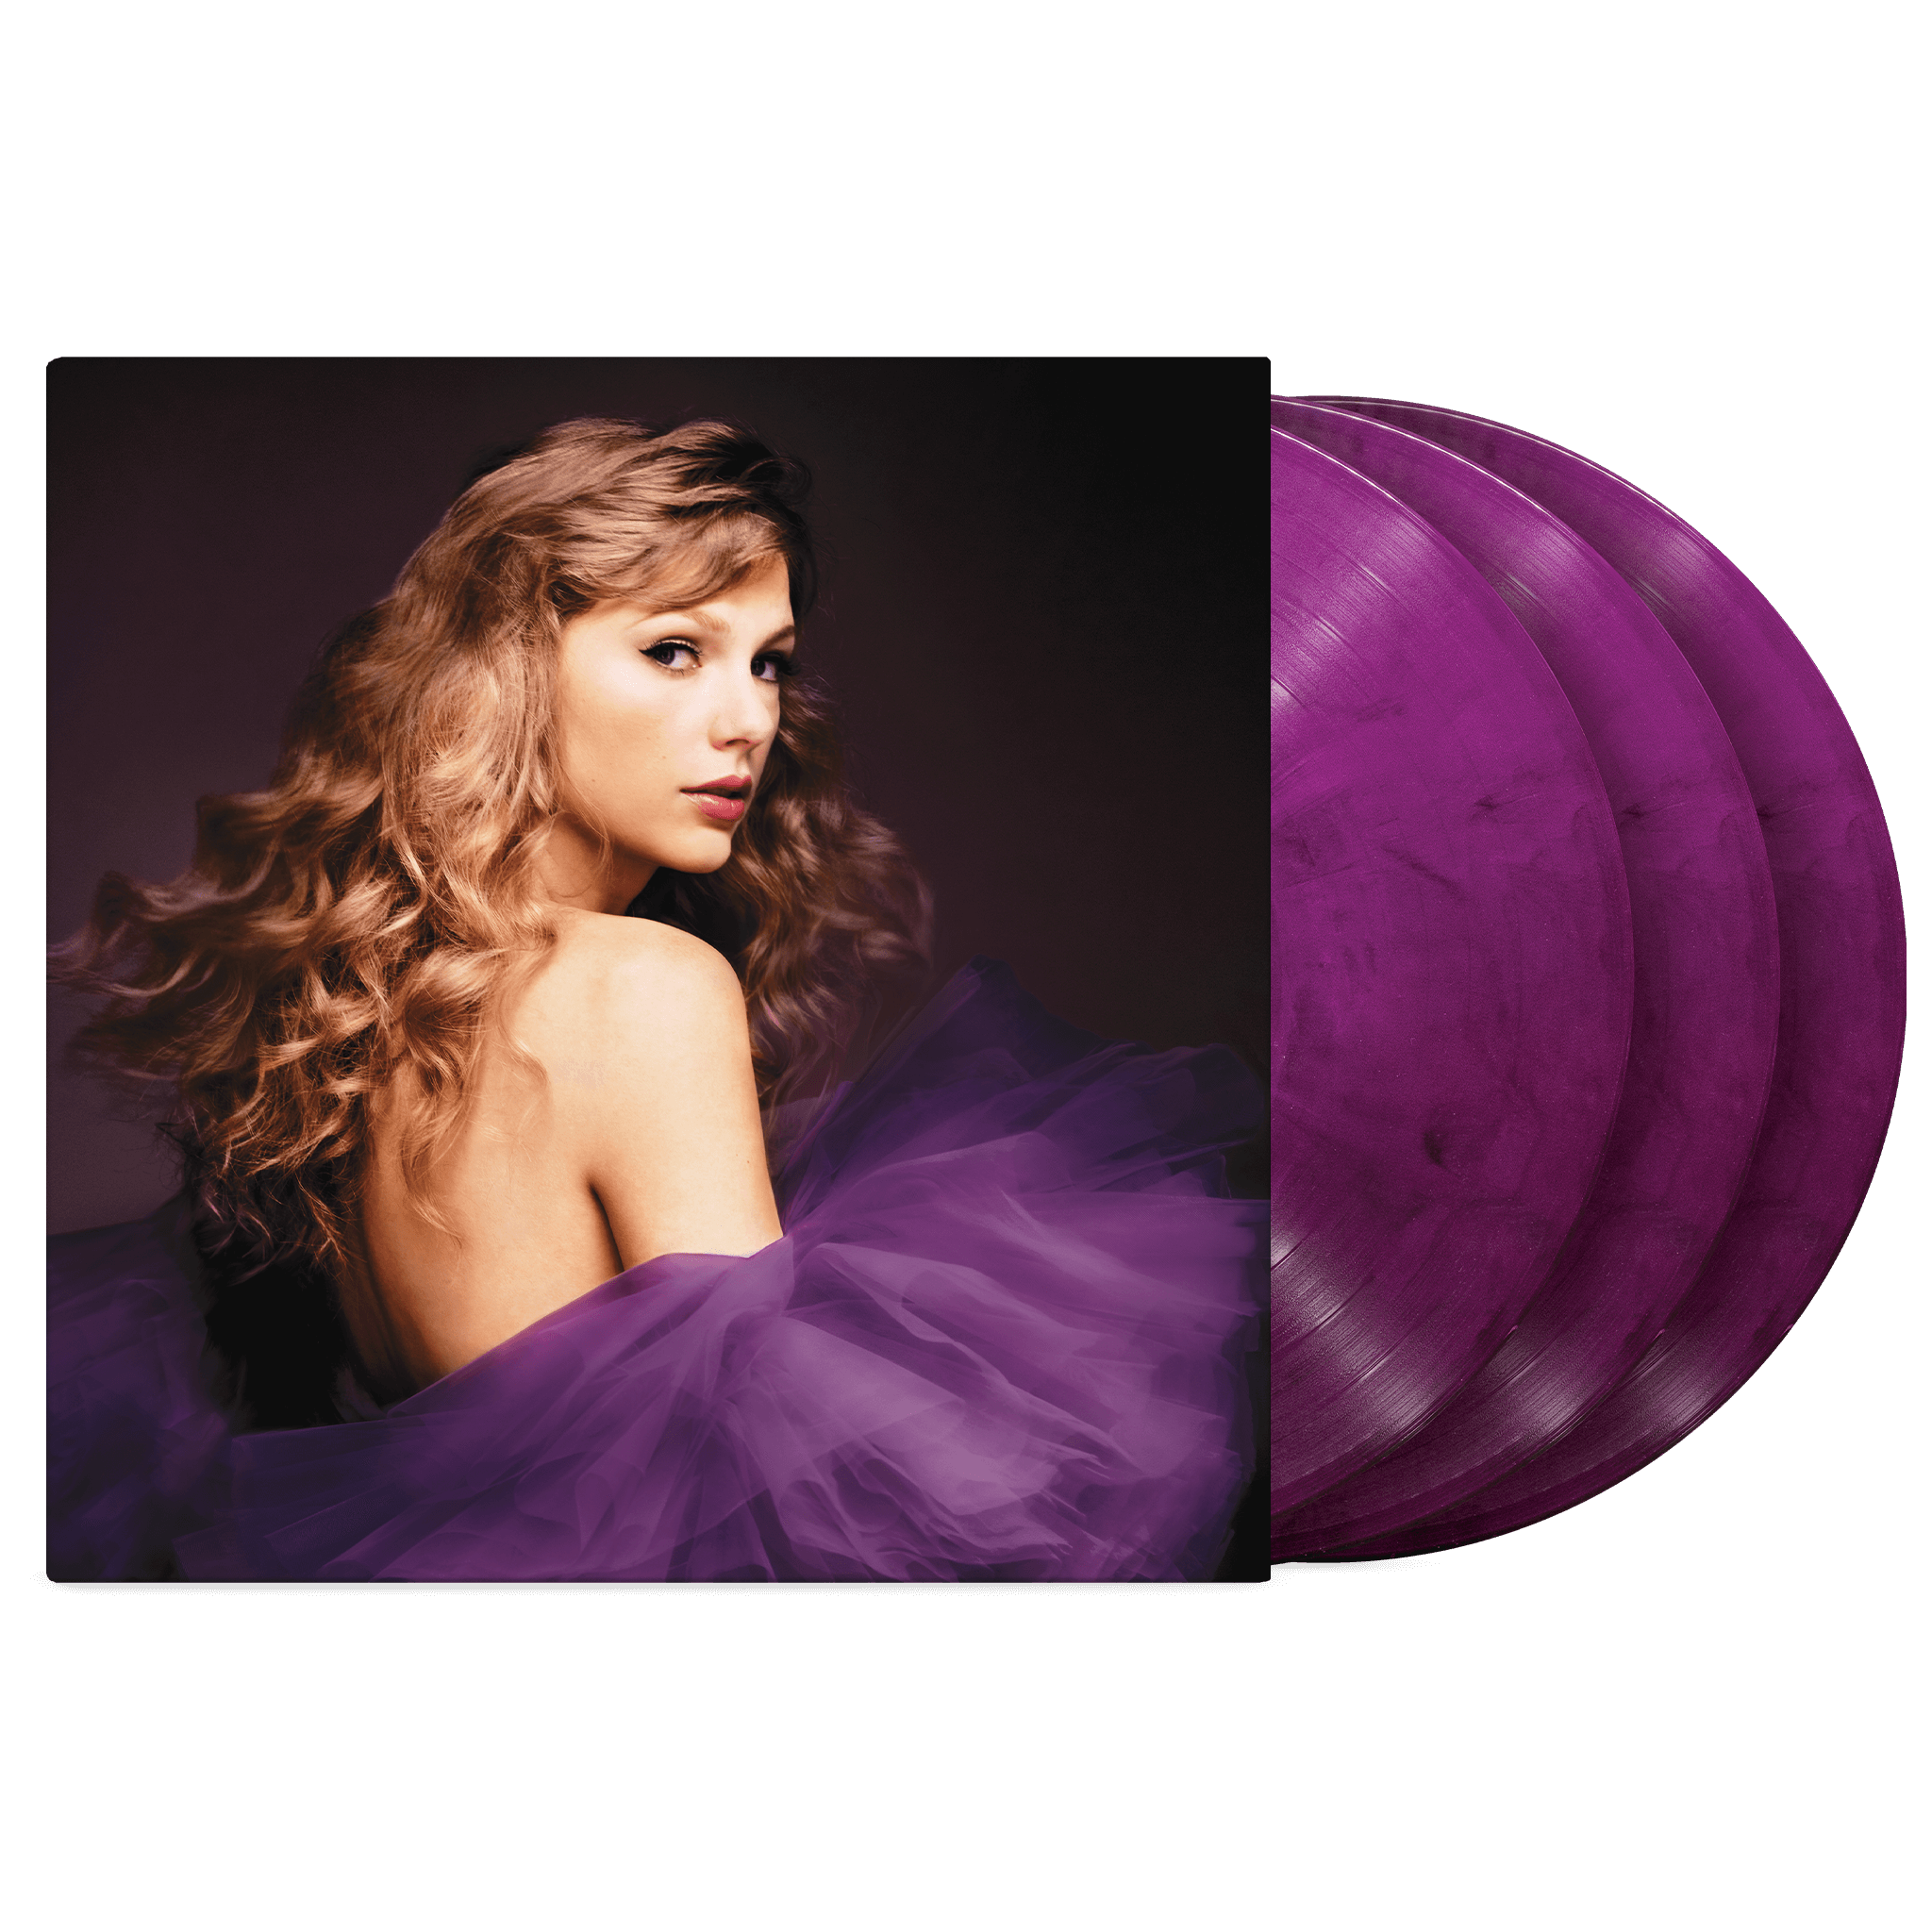 https://images.bravado.de/prod/product-assets/product-asset-data/taylor-swift/taylor-swift-d2c-tt/products/503450/web/387324/image-thumb__387324__3000x3000_original/Taylor-Swift-Speak-Now-Taylor-s-Version-Vinyl-Album-lila-503450-387324.png